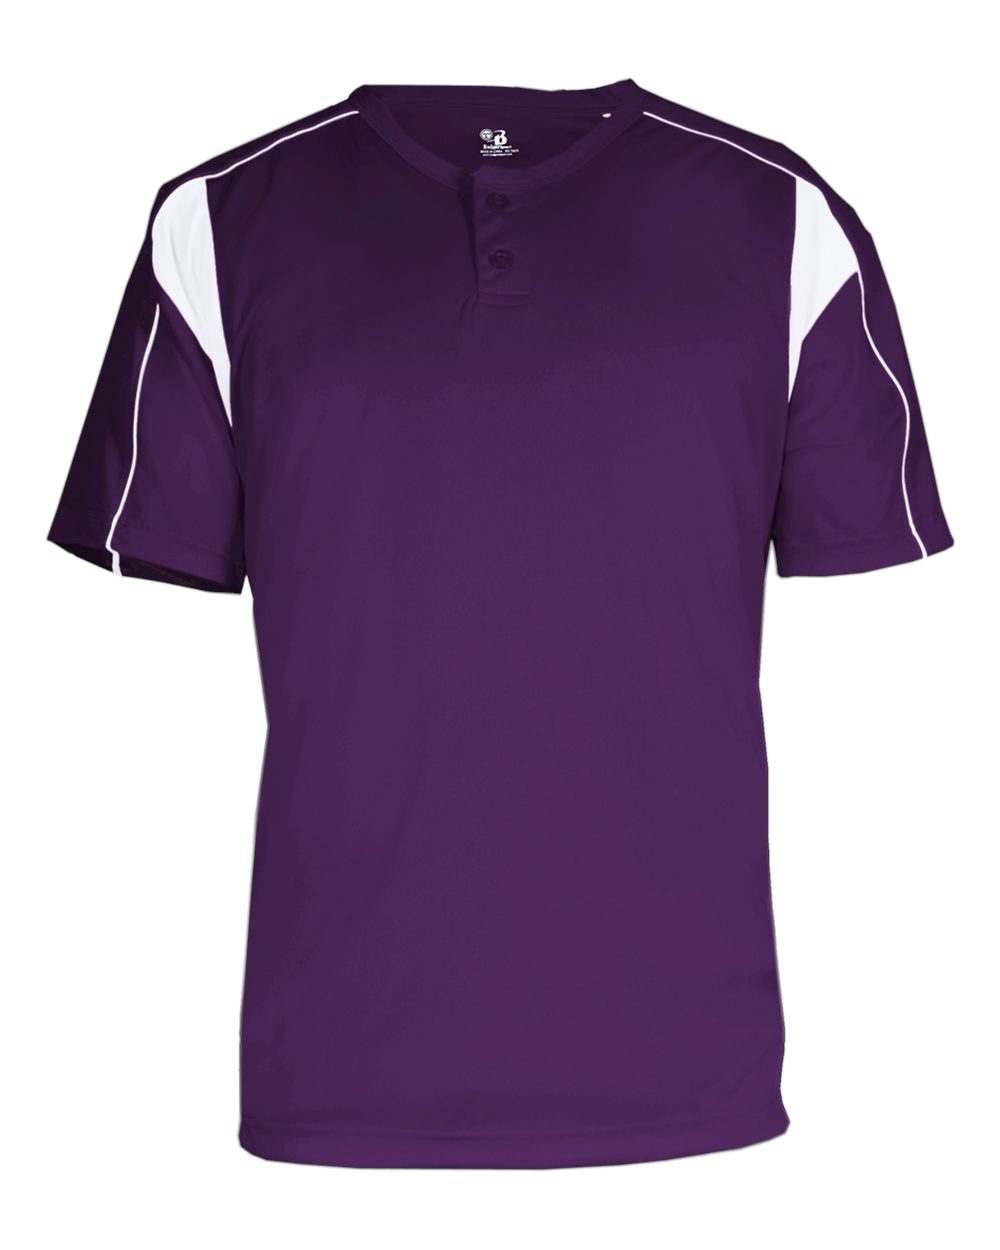 purple and white baseball jersey